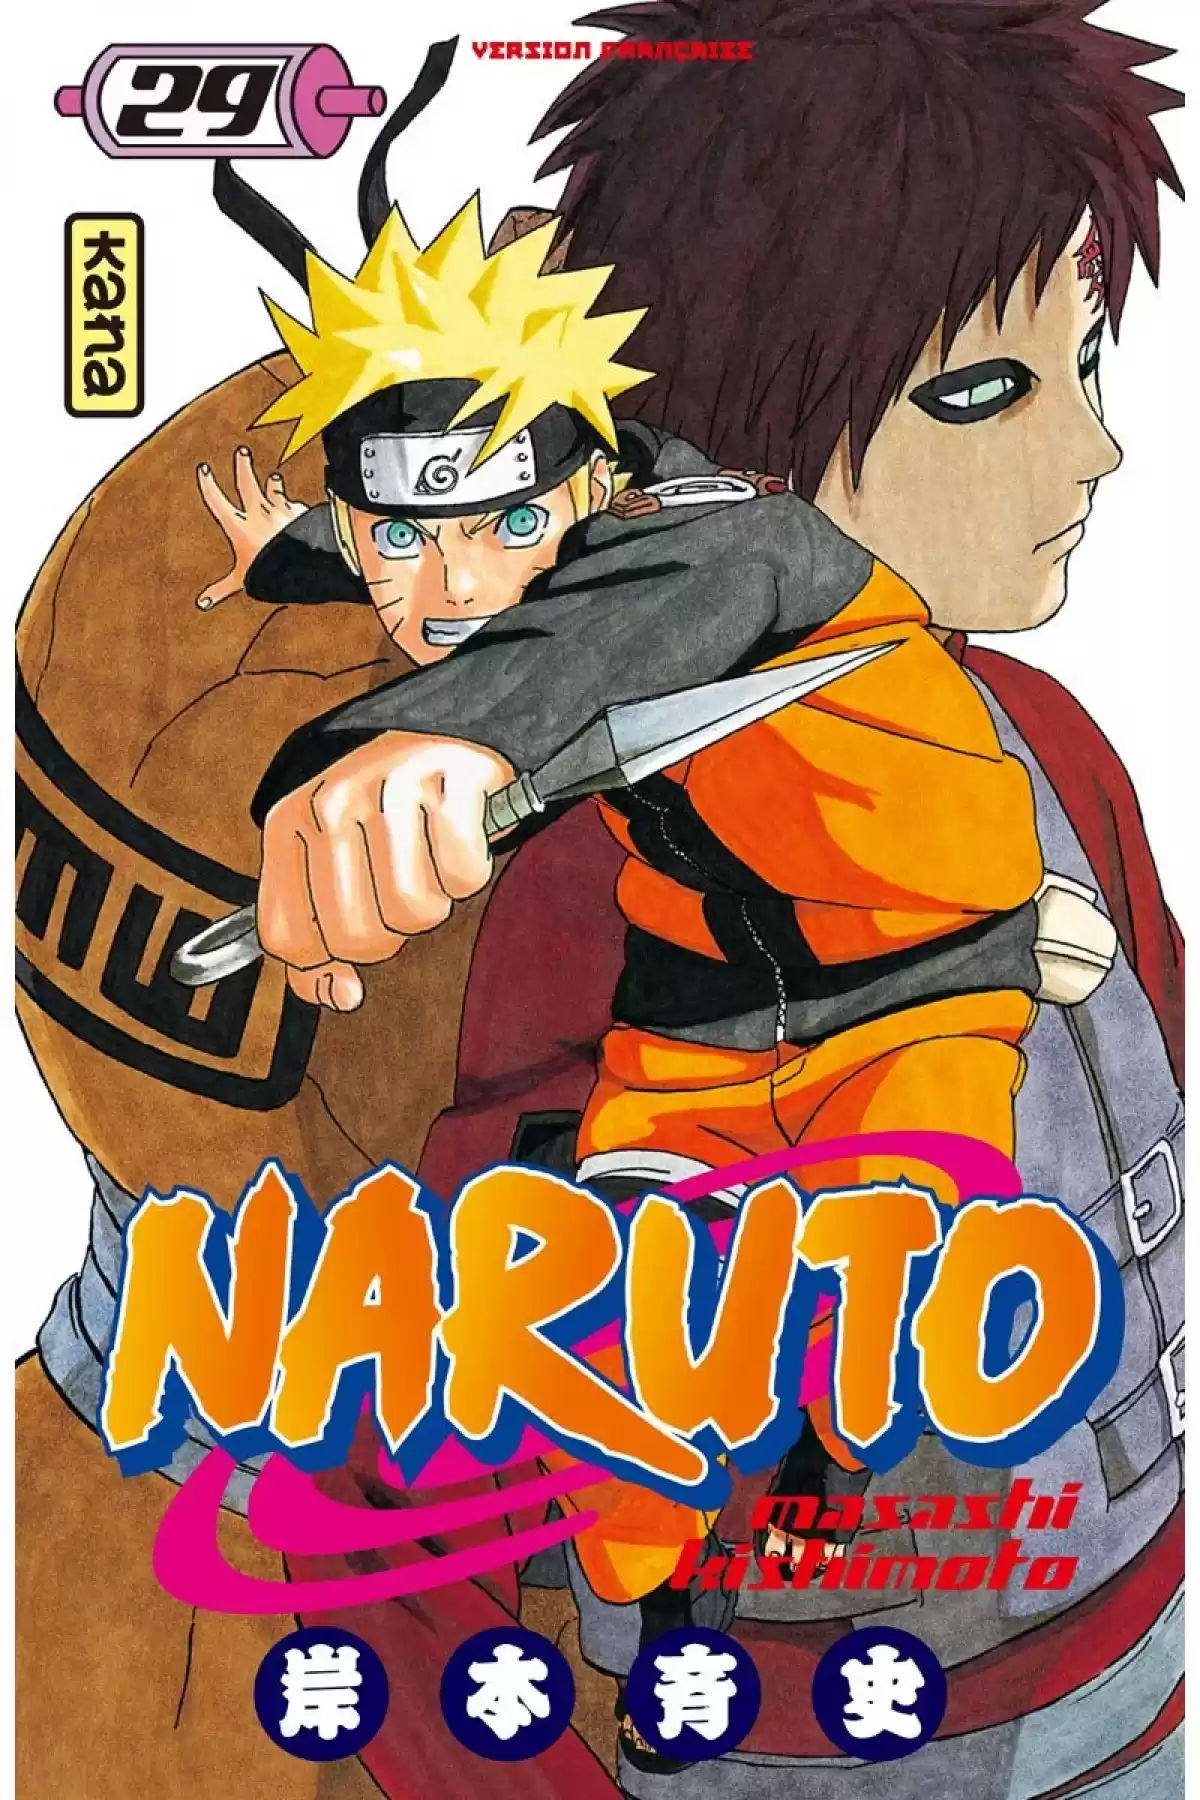 Naruto Volume 29 page 1